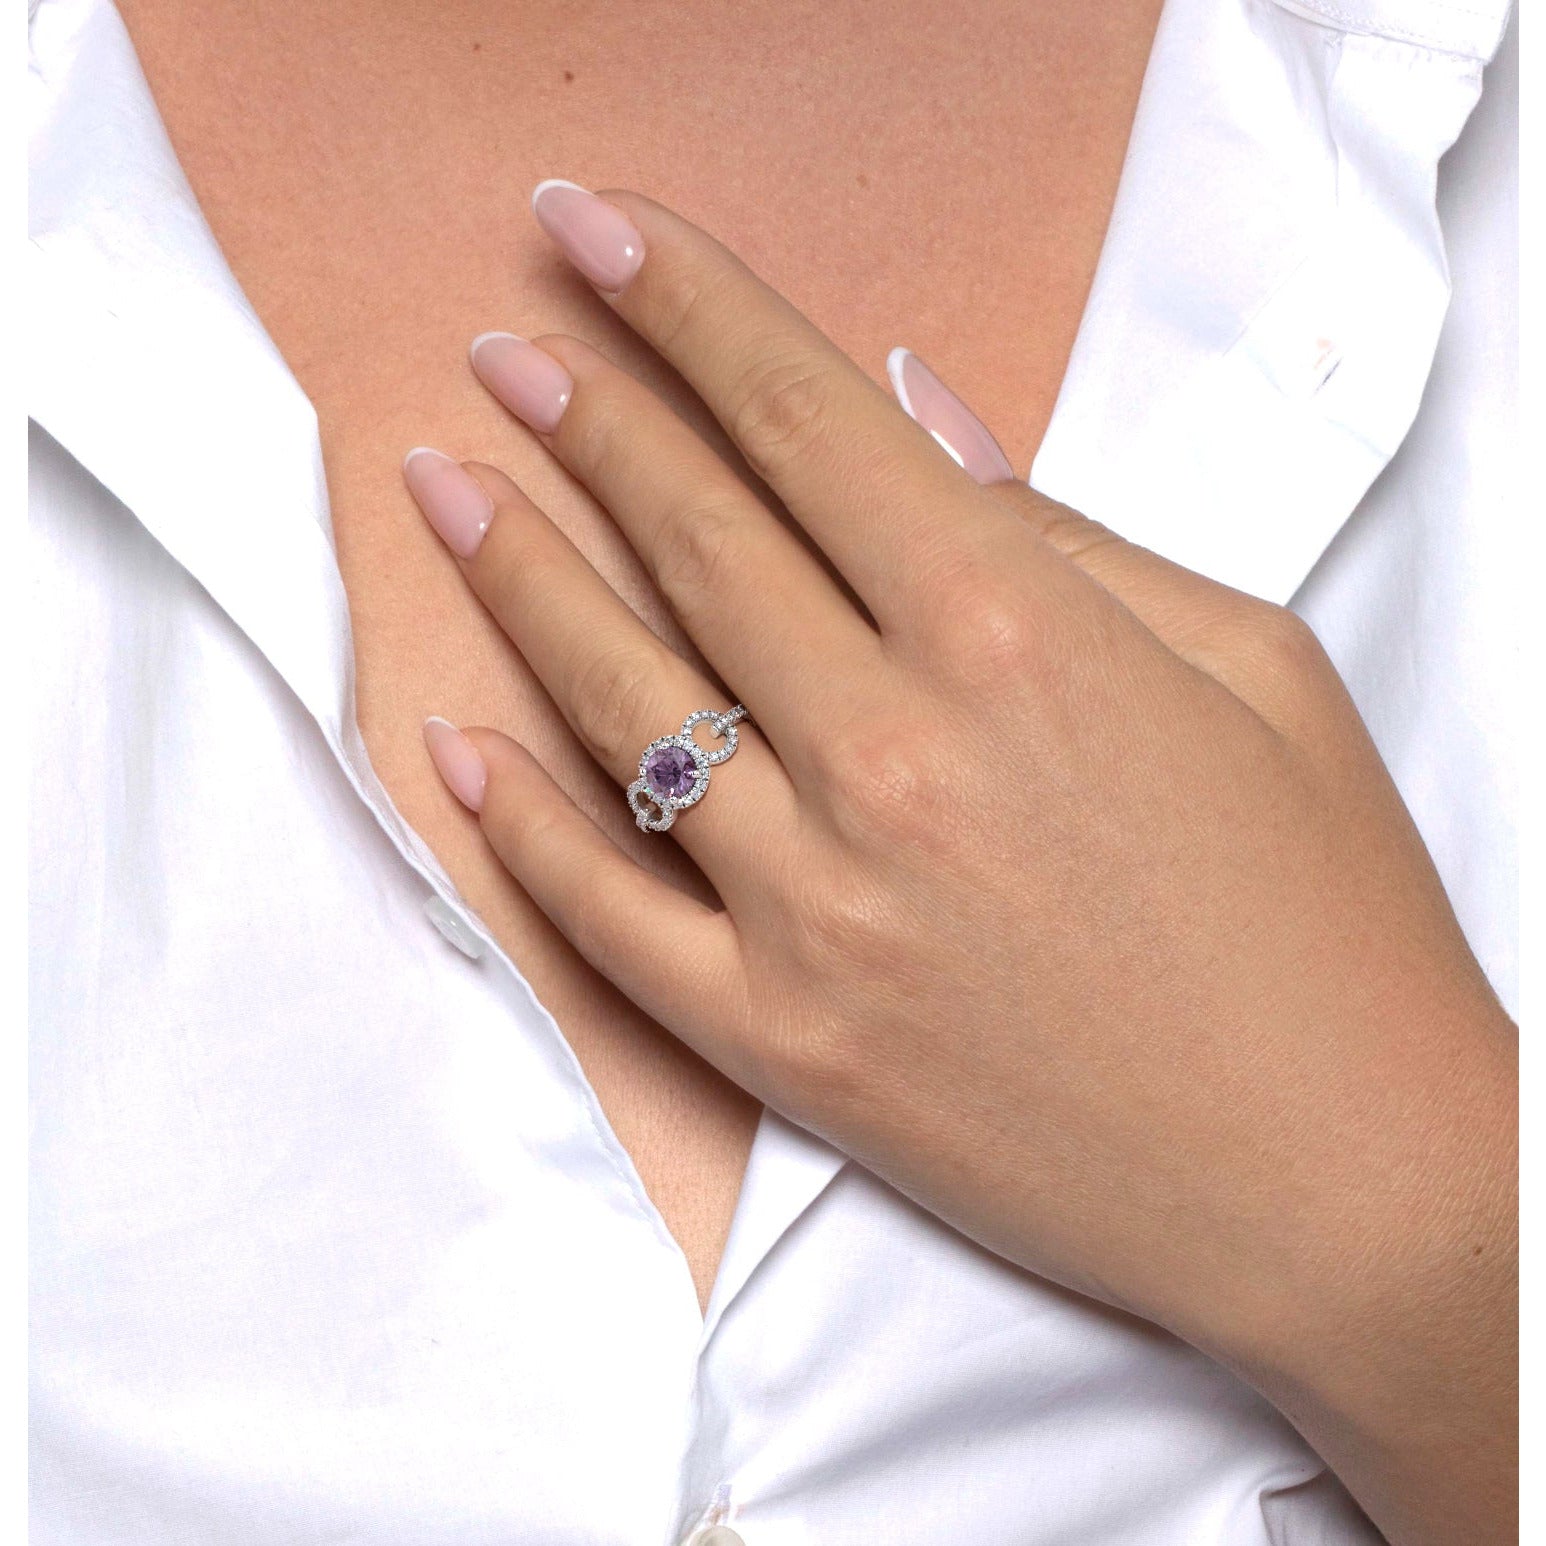 Elize Gemstone & Diamonds Ring   (1.30 Carat) -14K White Gold